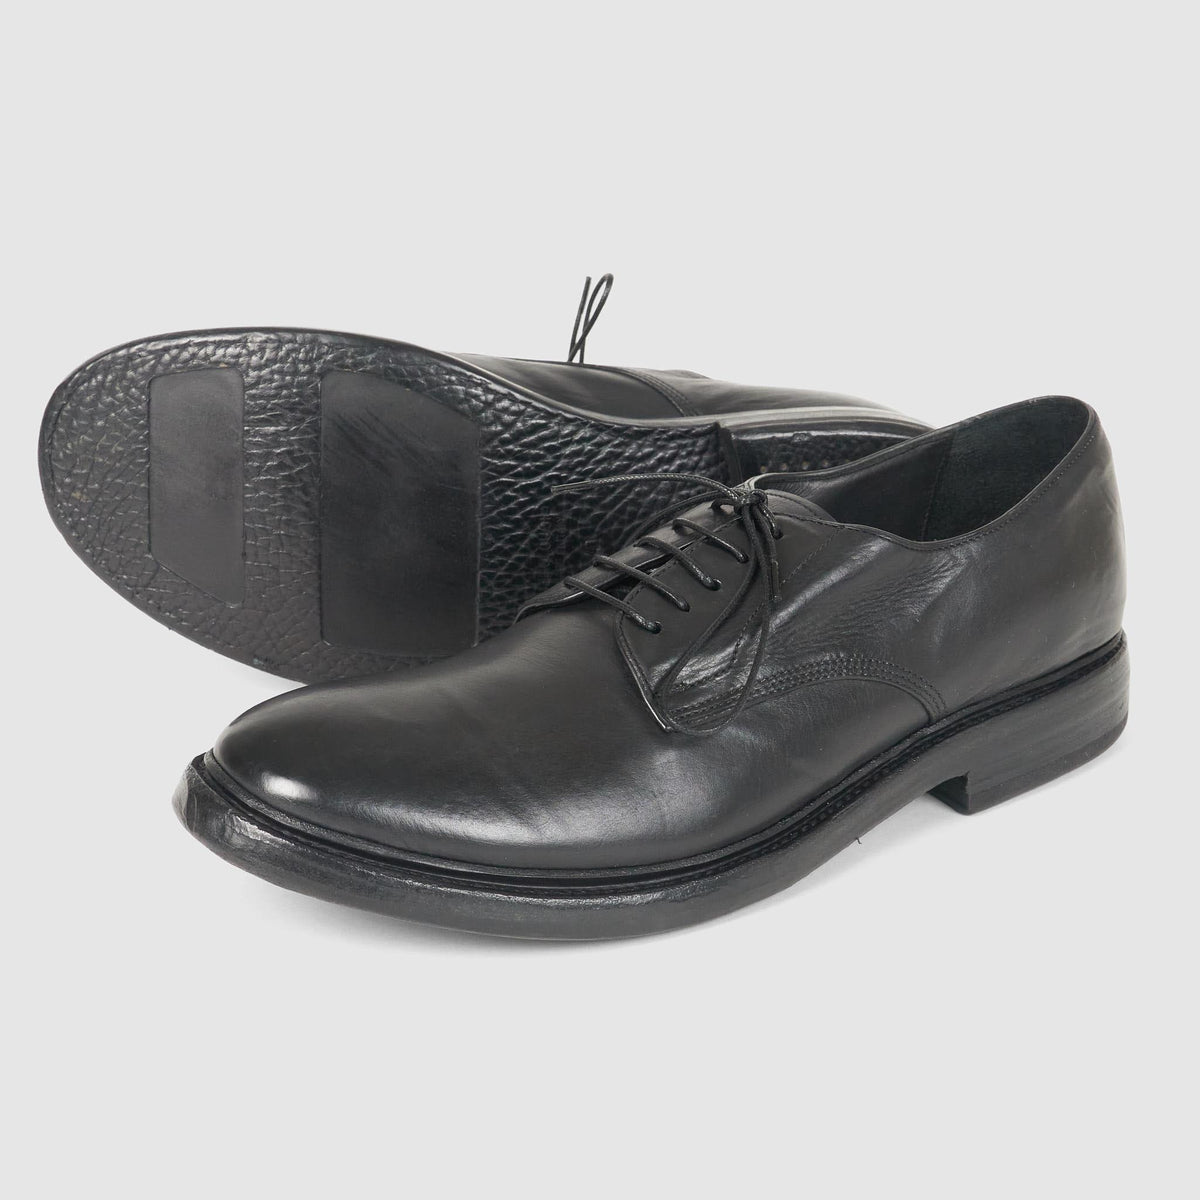 Preventi Classic Hand Made Service Shoe